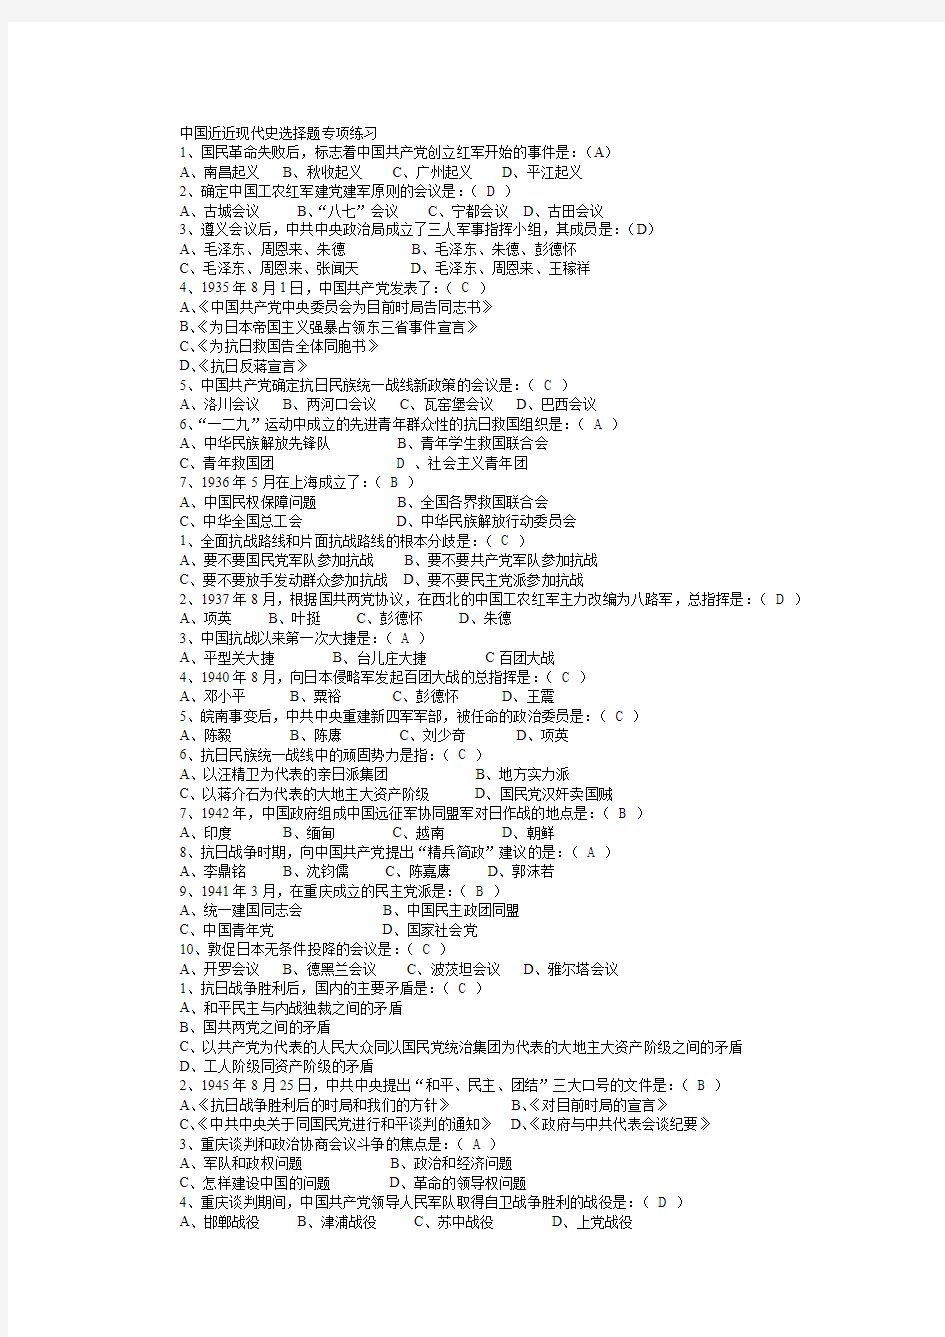 《中国近现代史》选择题全集(共含250道题目和答案)